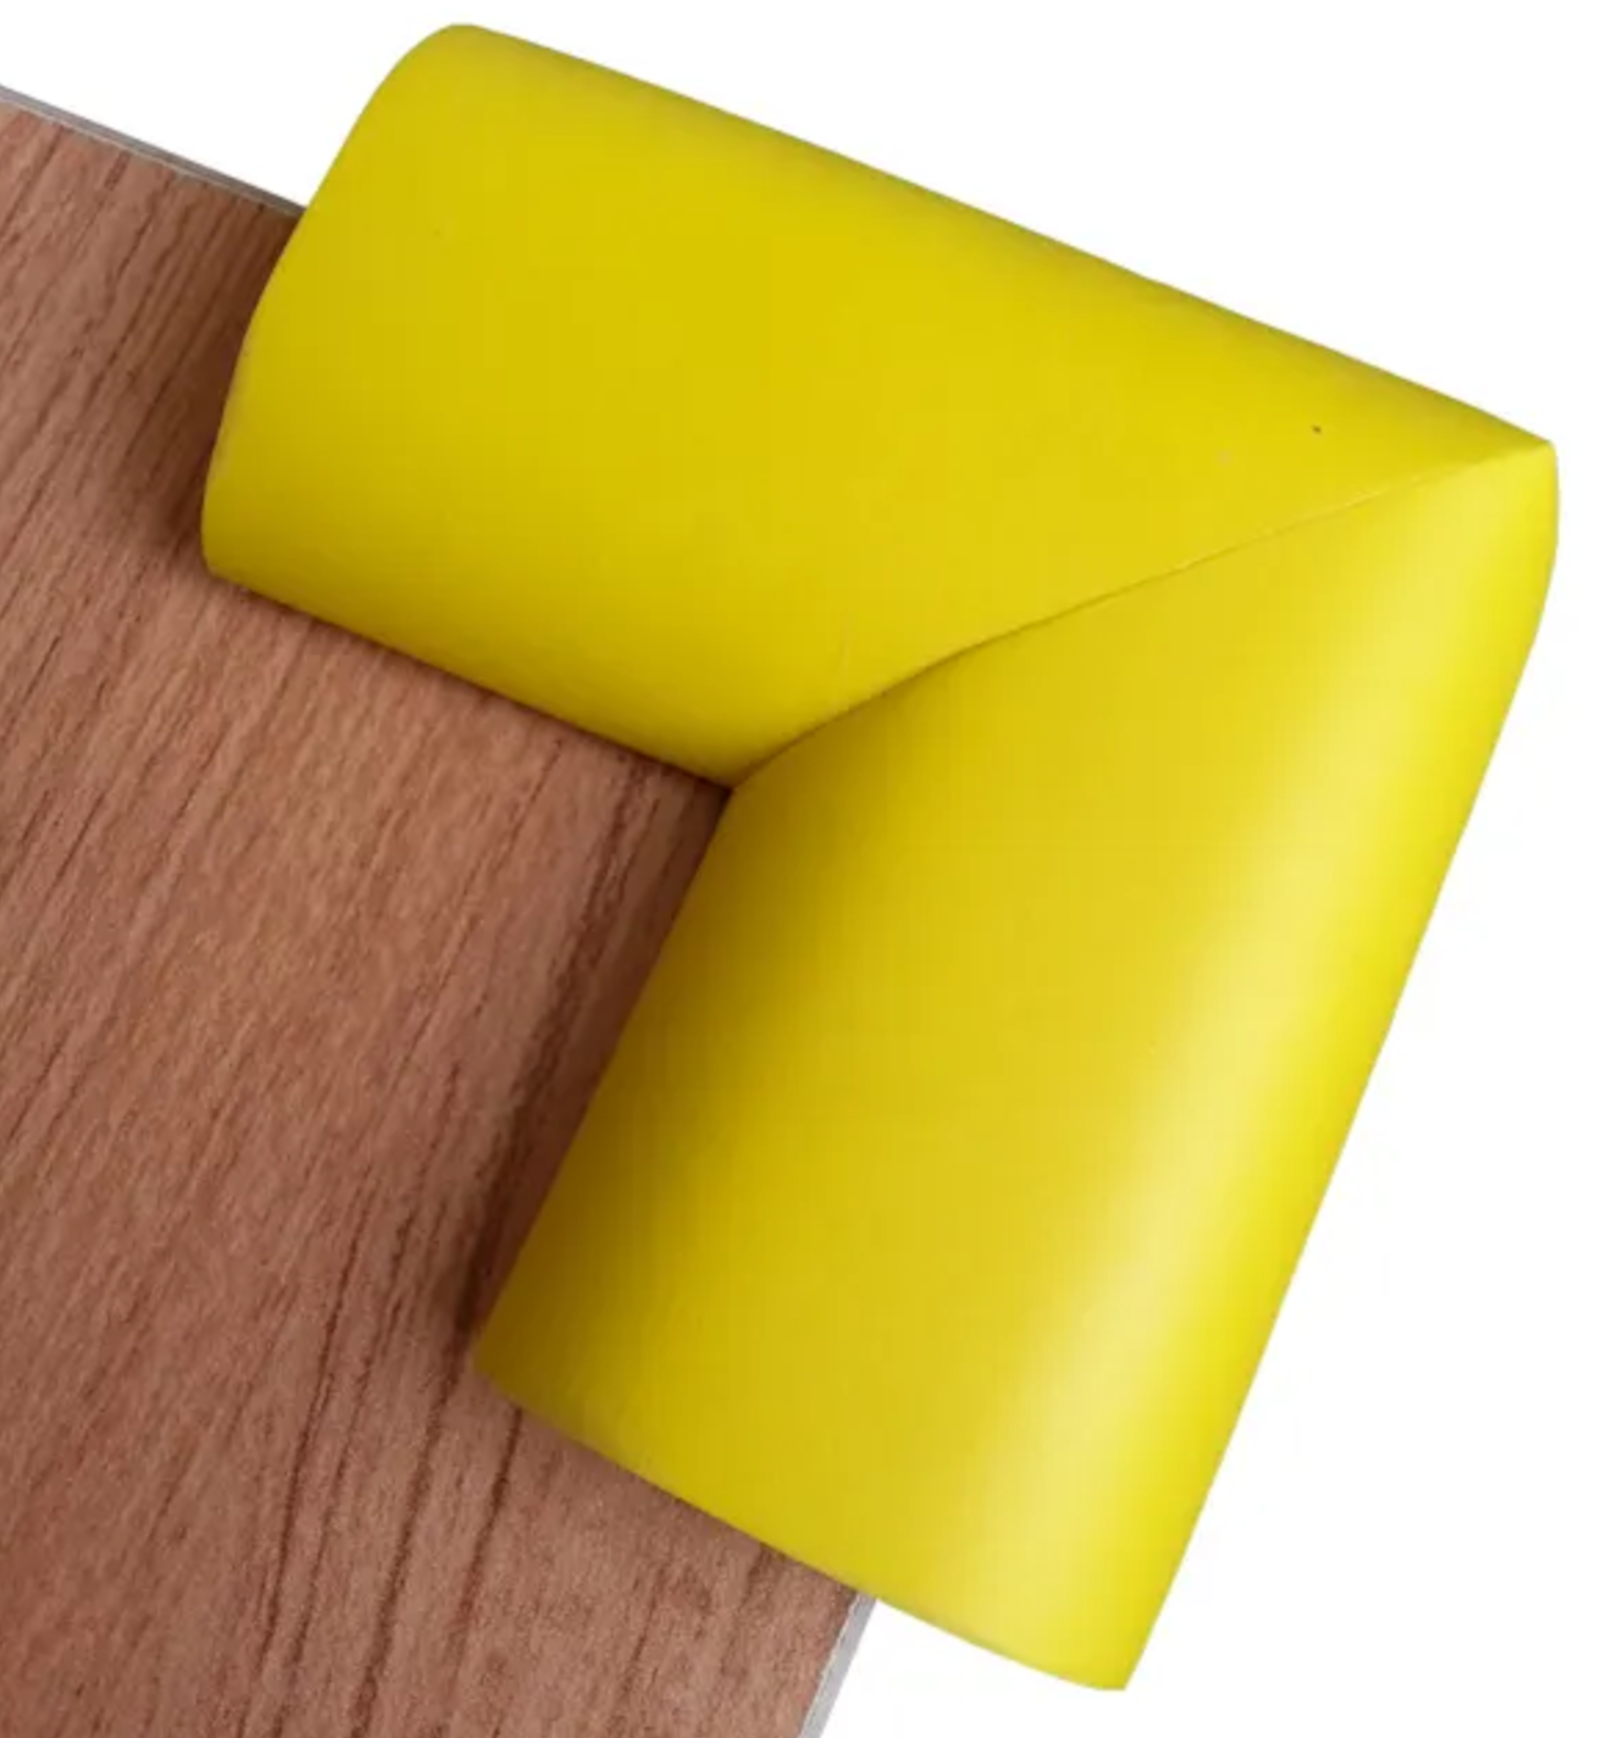 Tisch Schreibtisch Kantenschutz Polster Eckkissen Schutz Klebeband Färbe